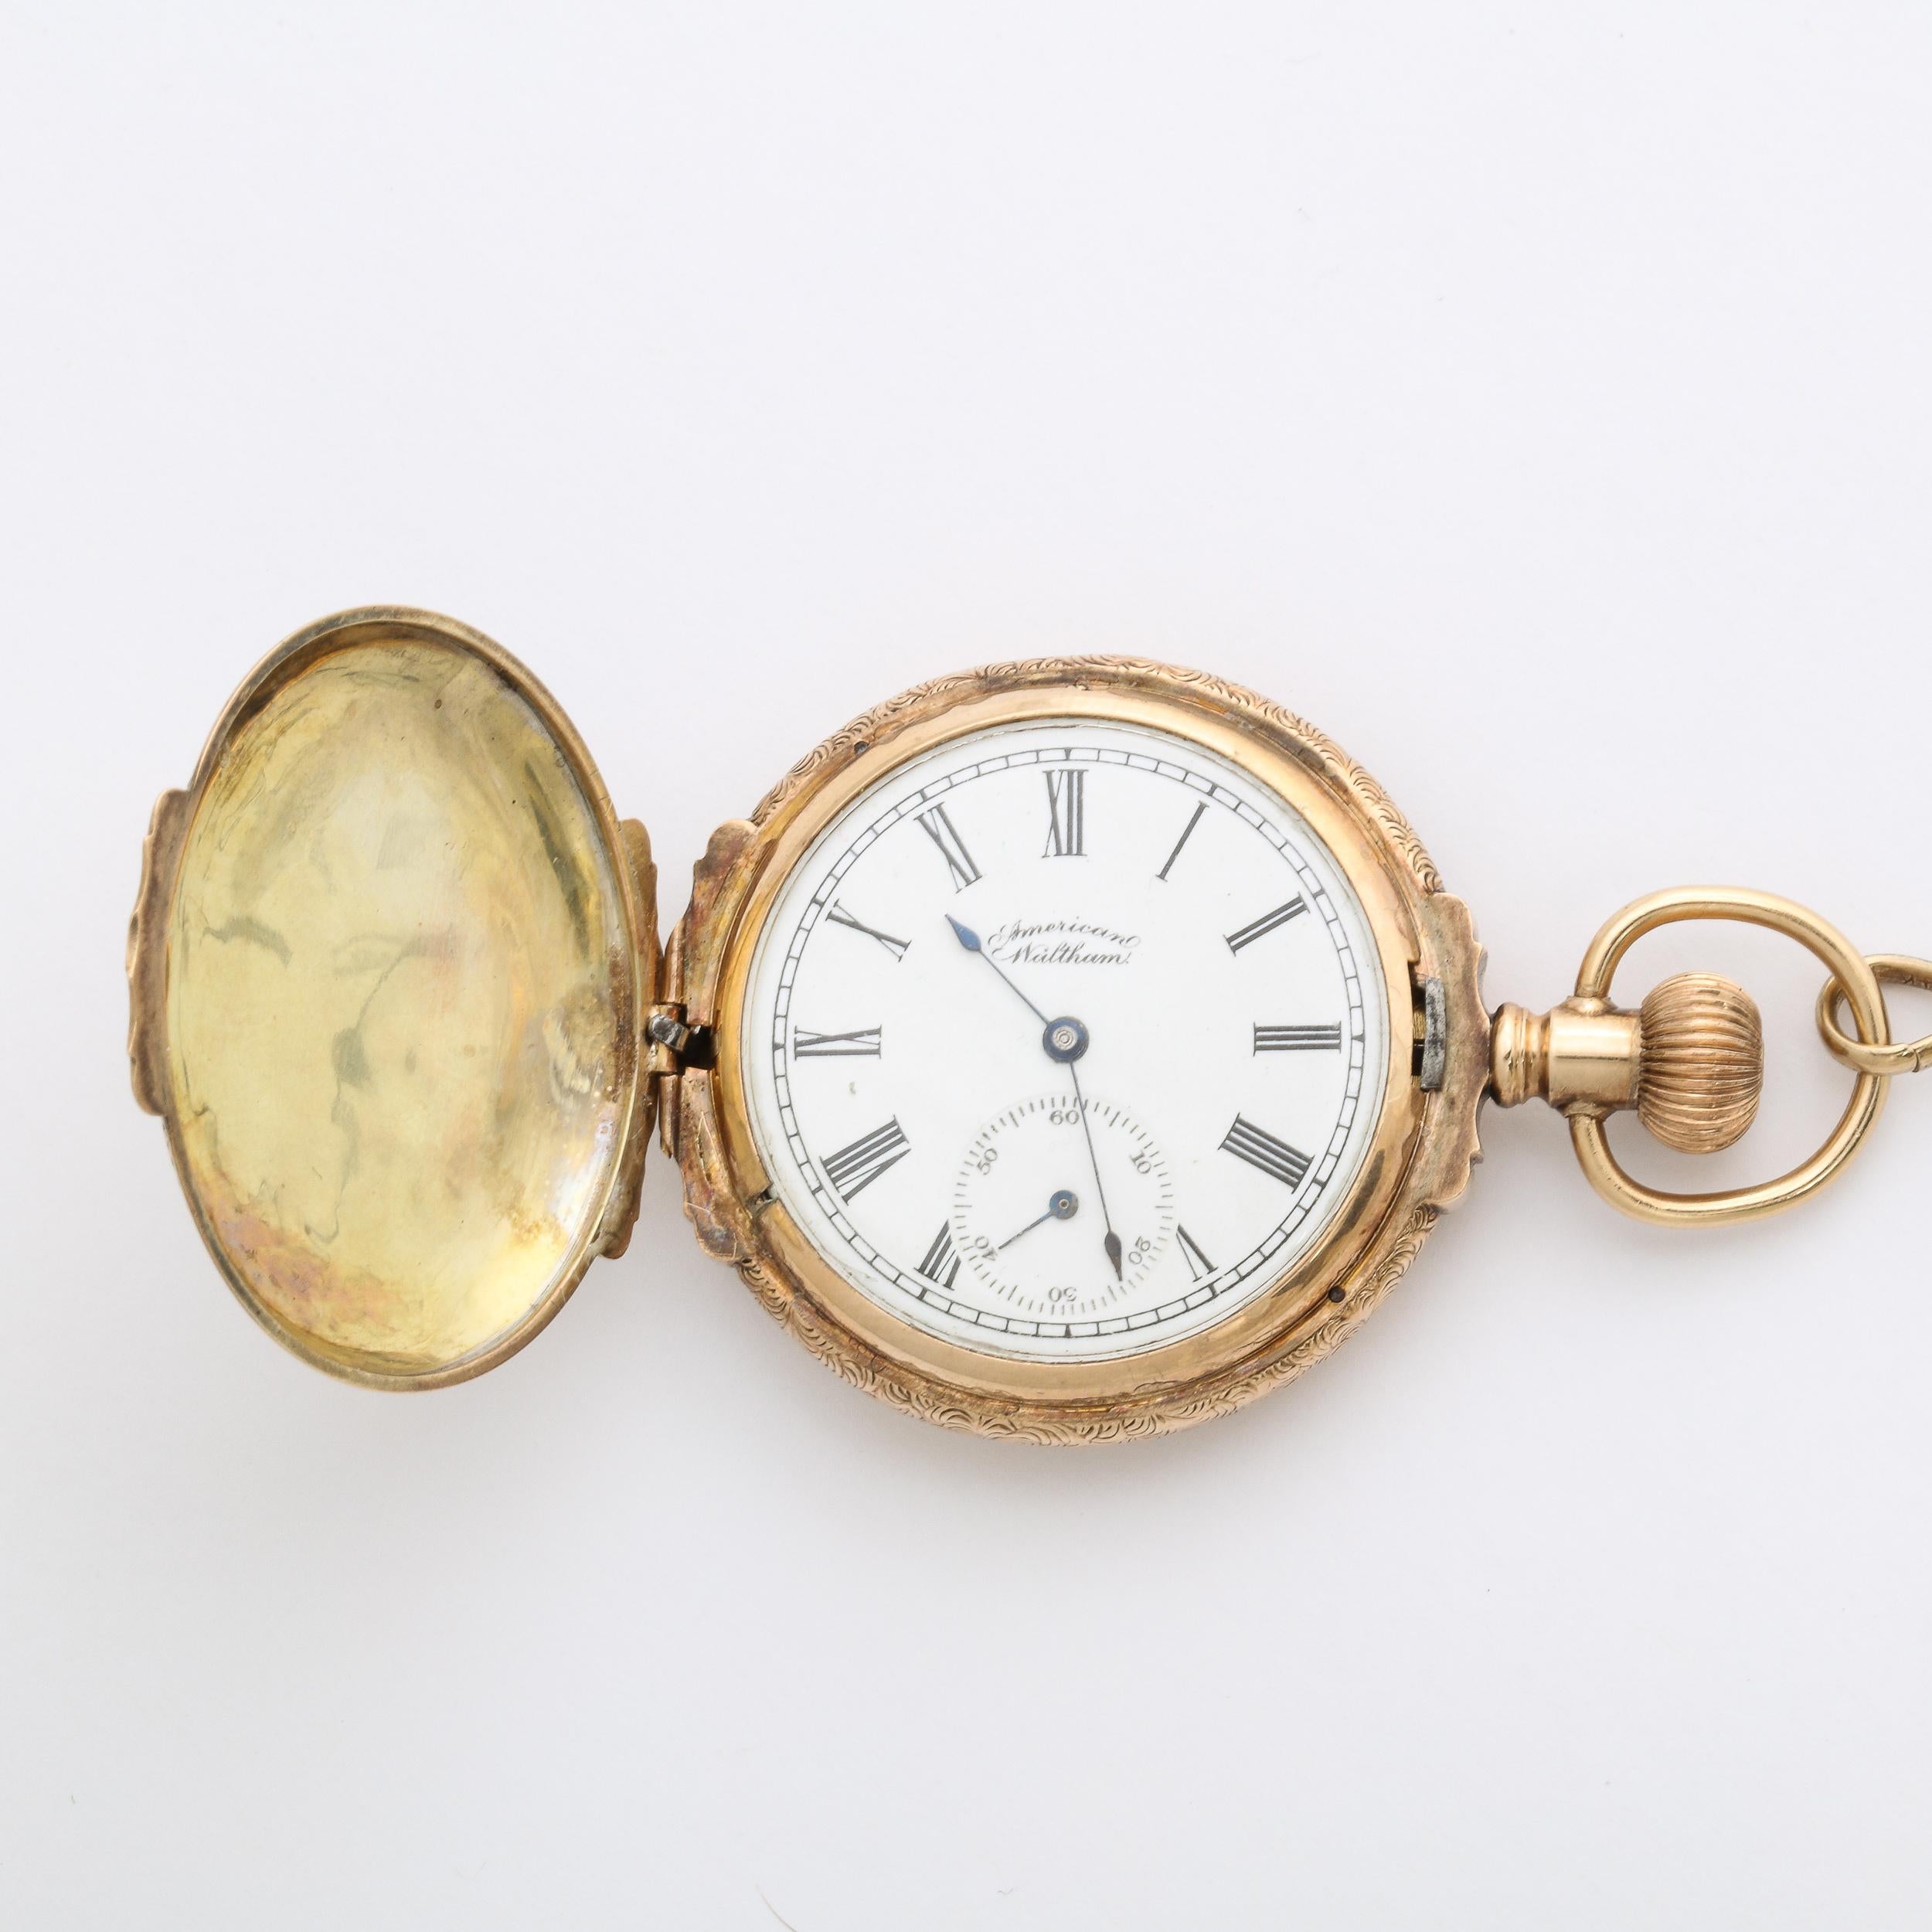 Cette étonnante montre de chasse pour dame en or jaune 14 carats avec porte-monnaie de Waltham Watch Co. 1888 a conservé son boîtier, son mouvement et son cadran en or d'origine. Elle constitue un ajout exquis à une collection de montres anciennes